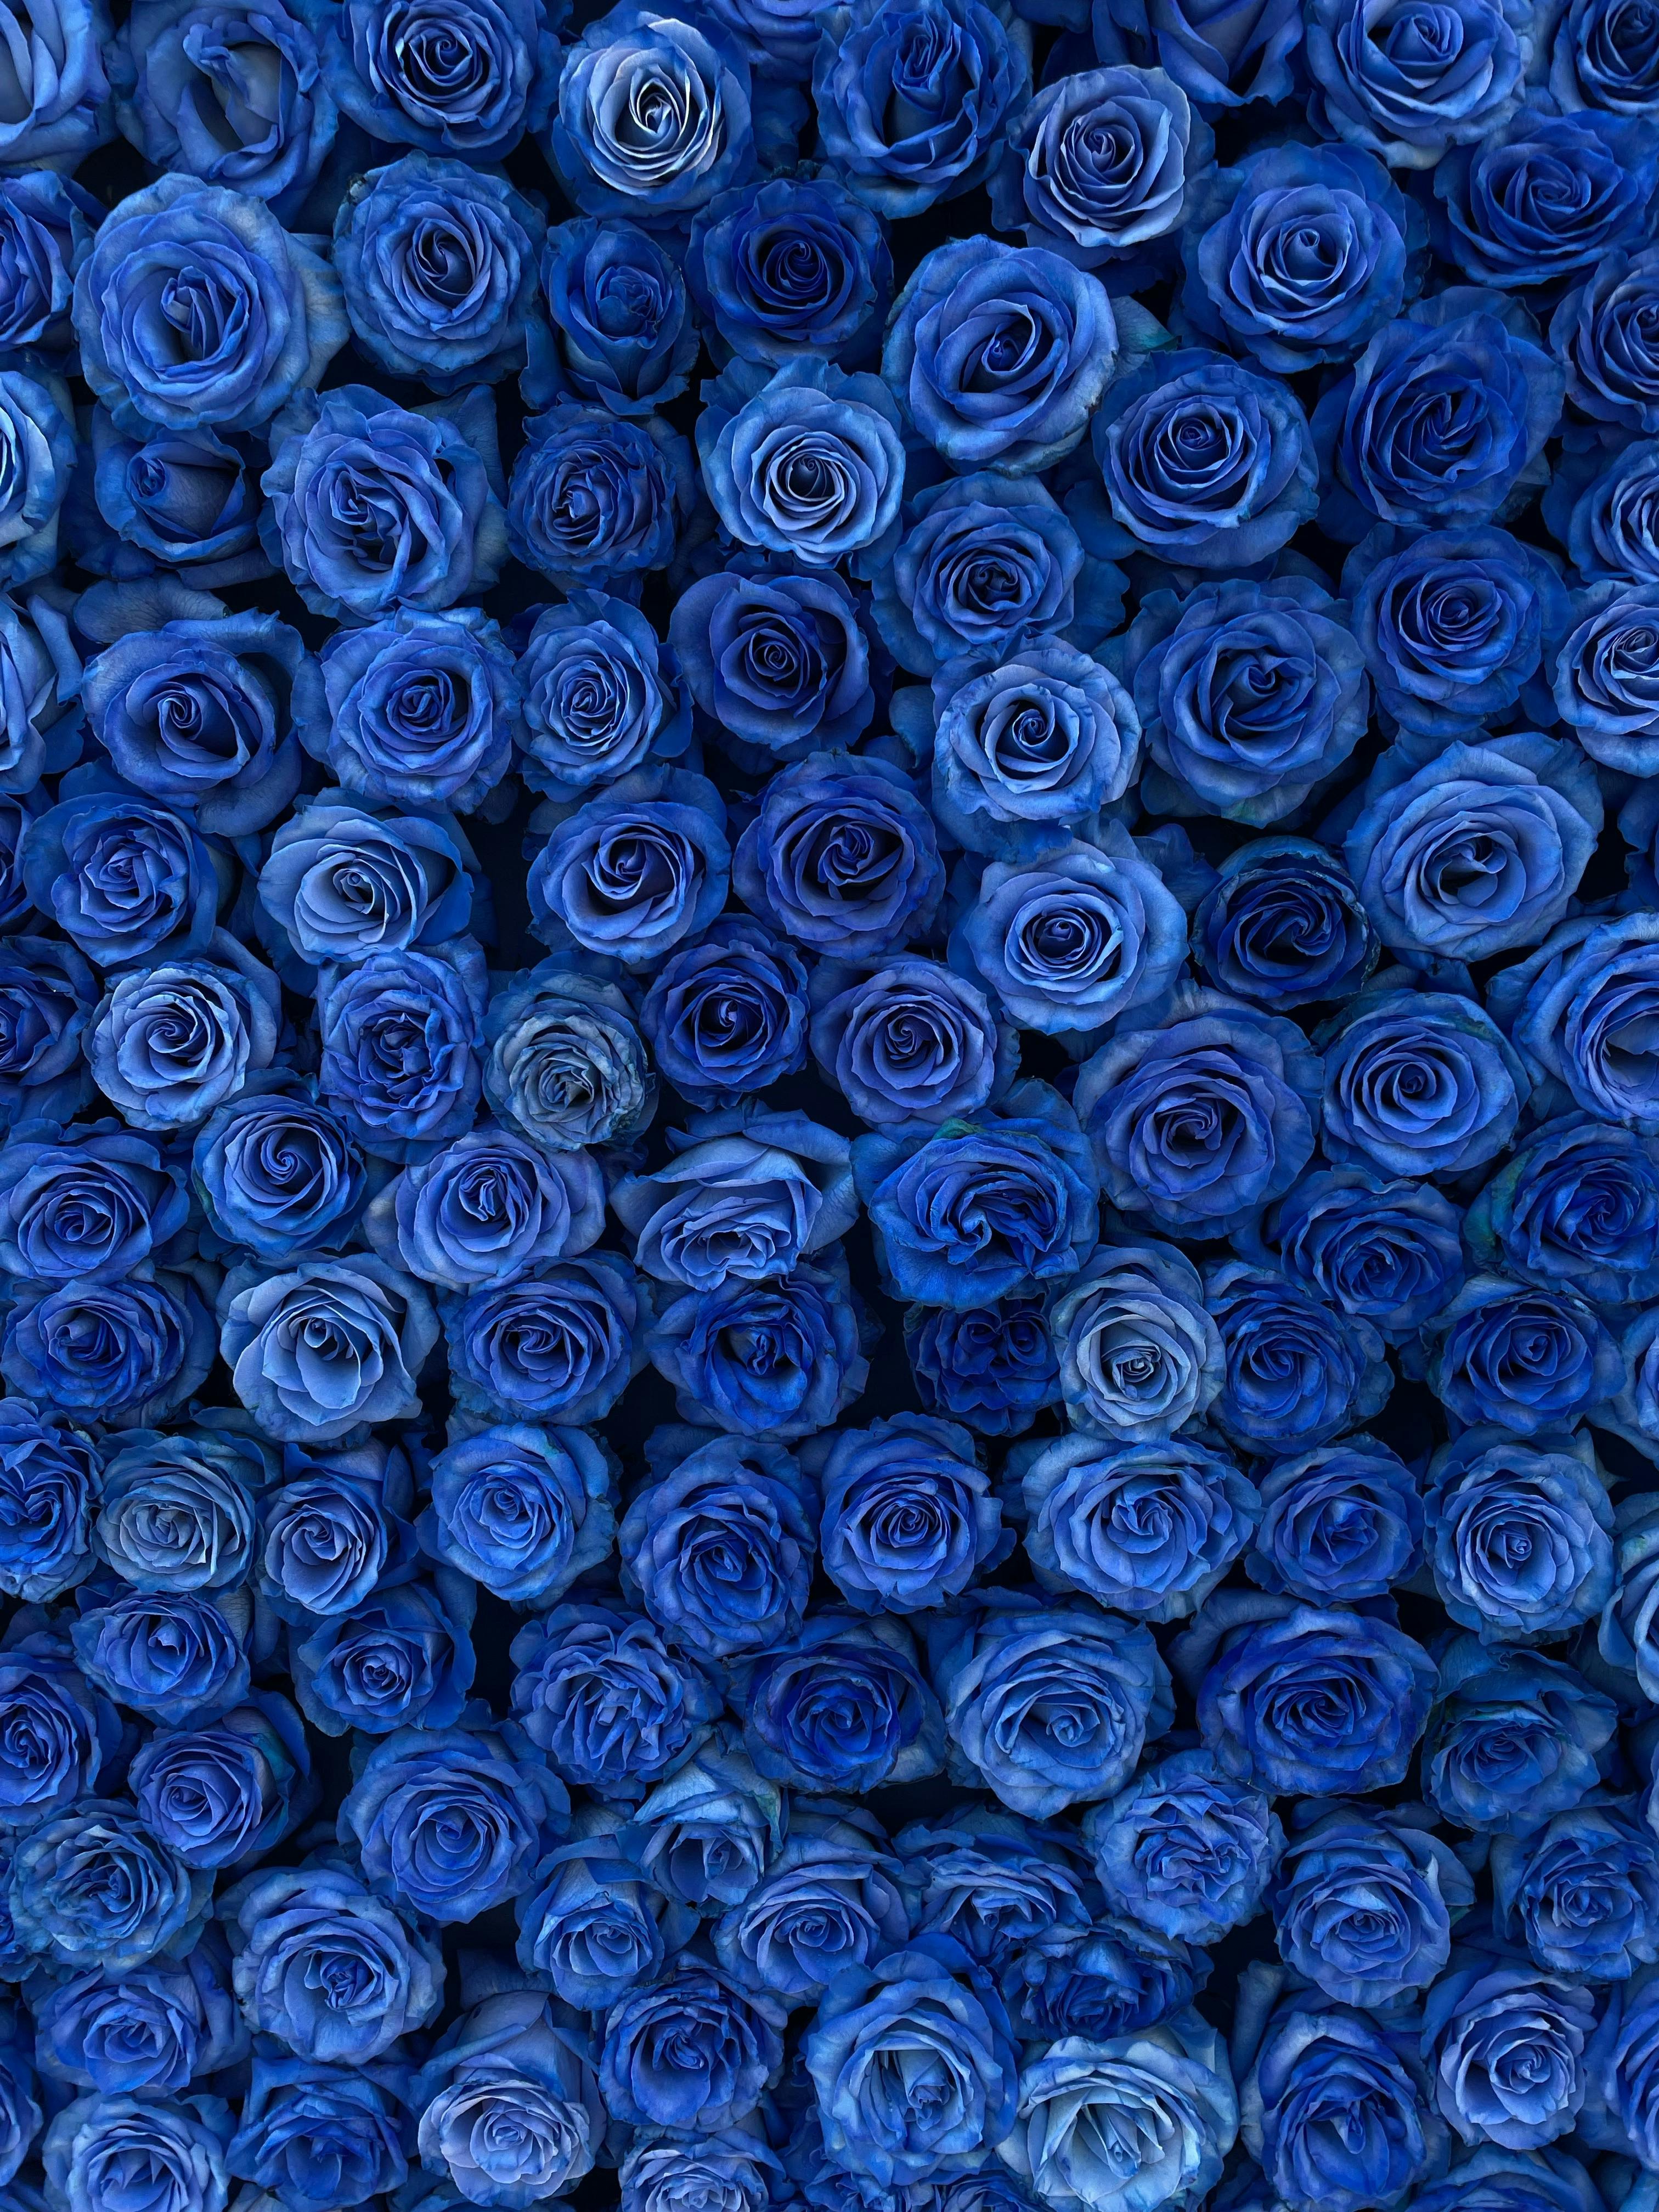 Hoa hồng xanh vĩnh cửu chất lượng cao giá tốt